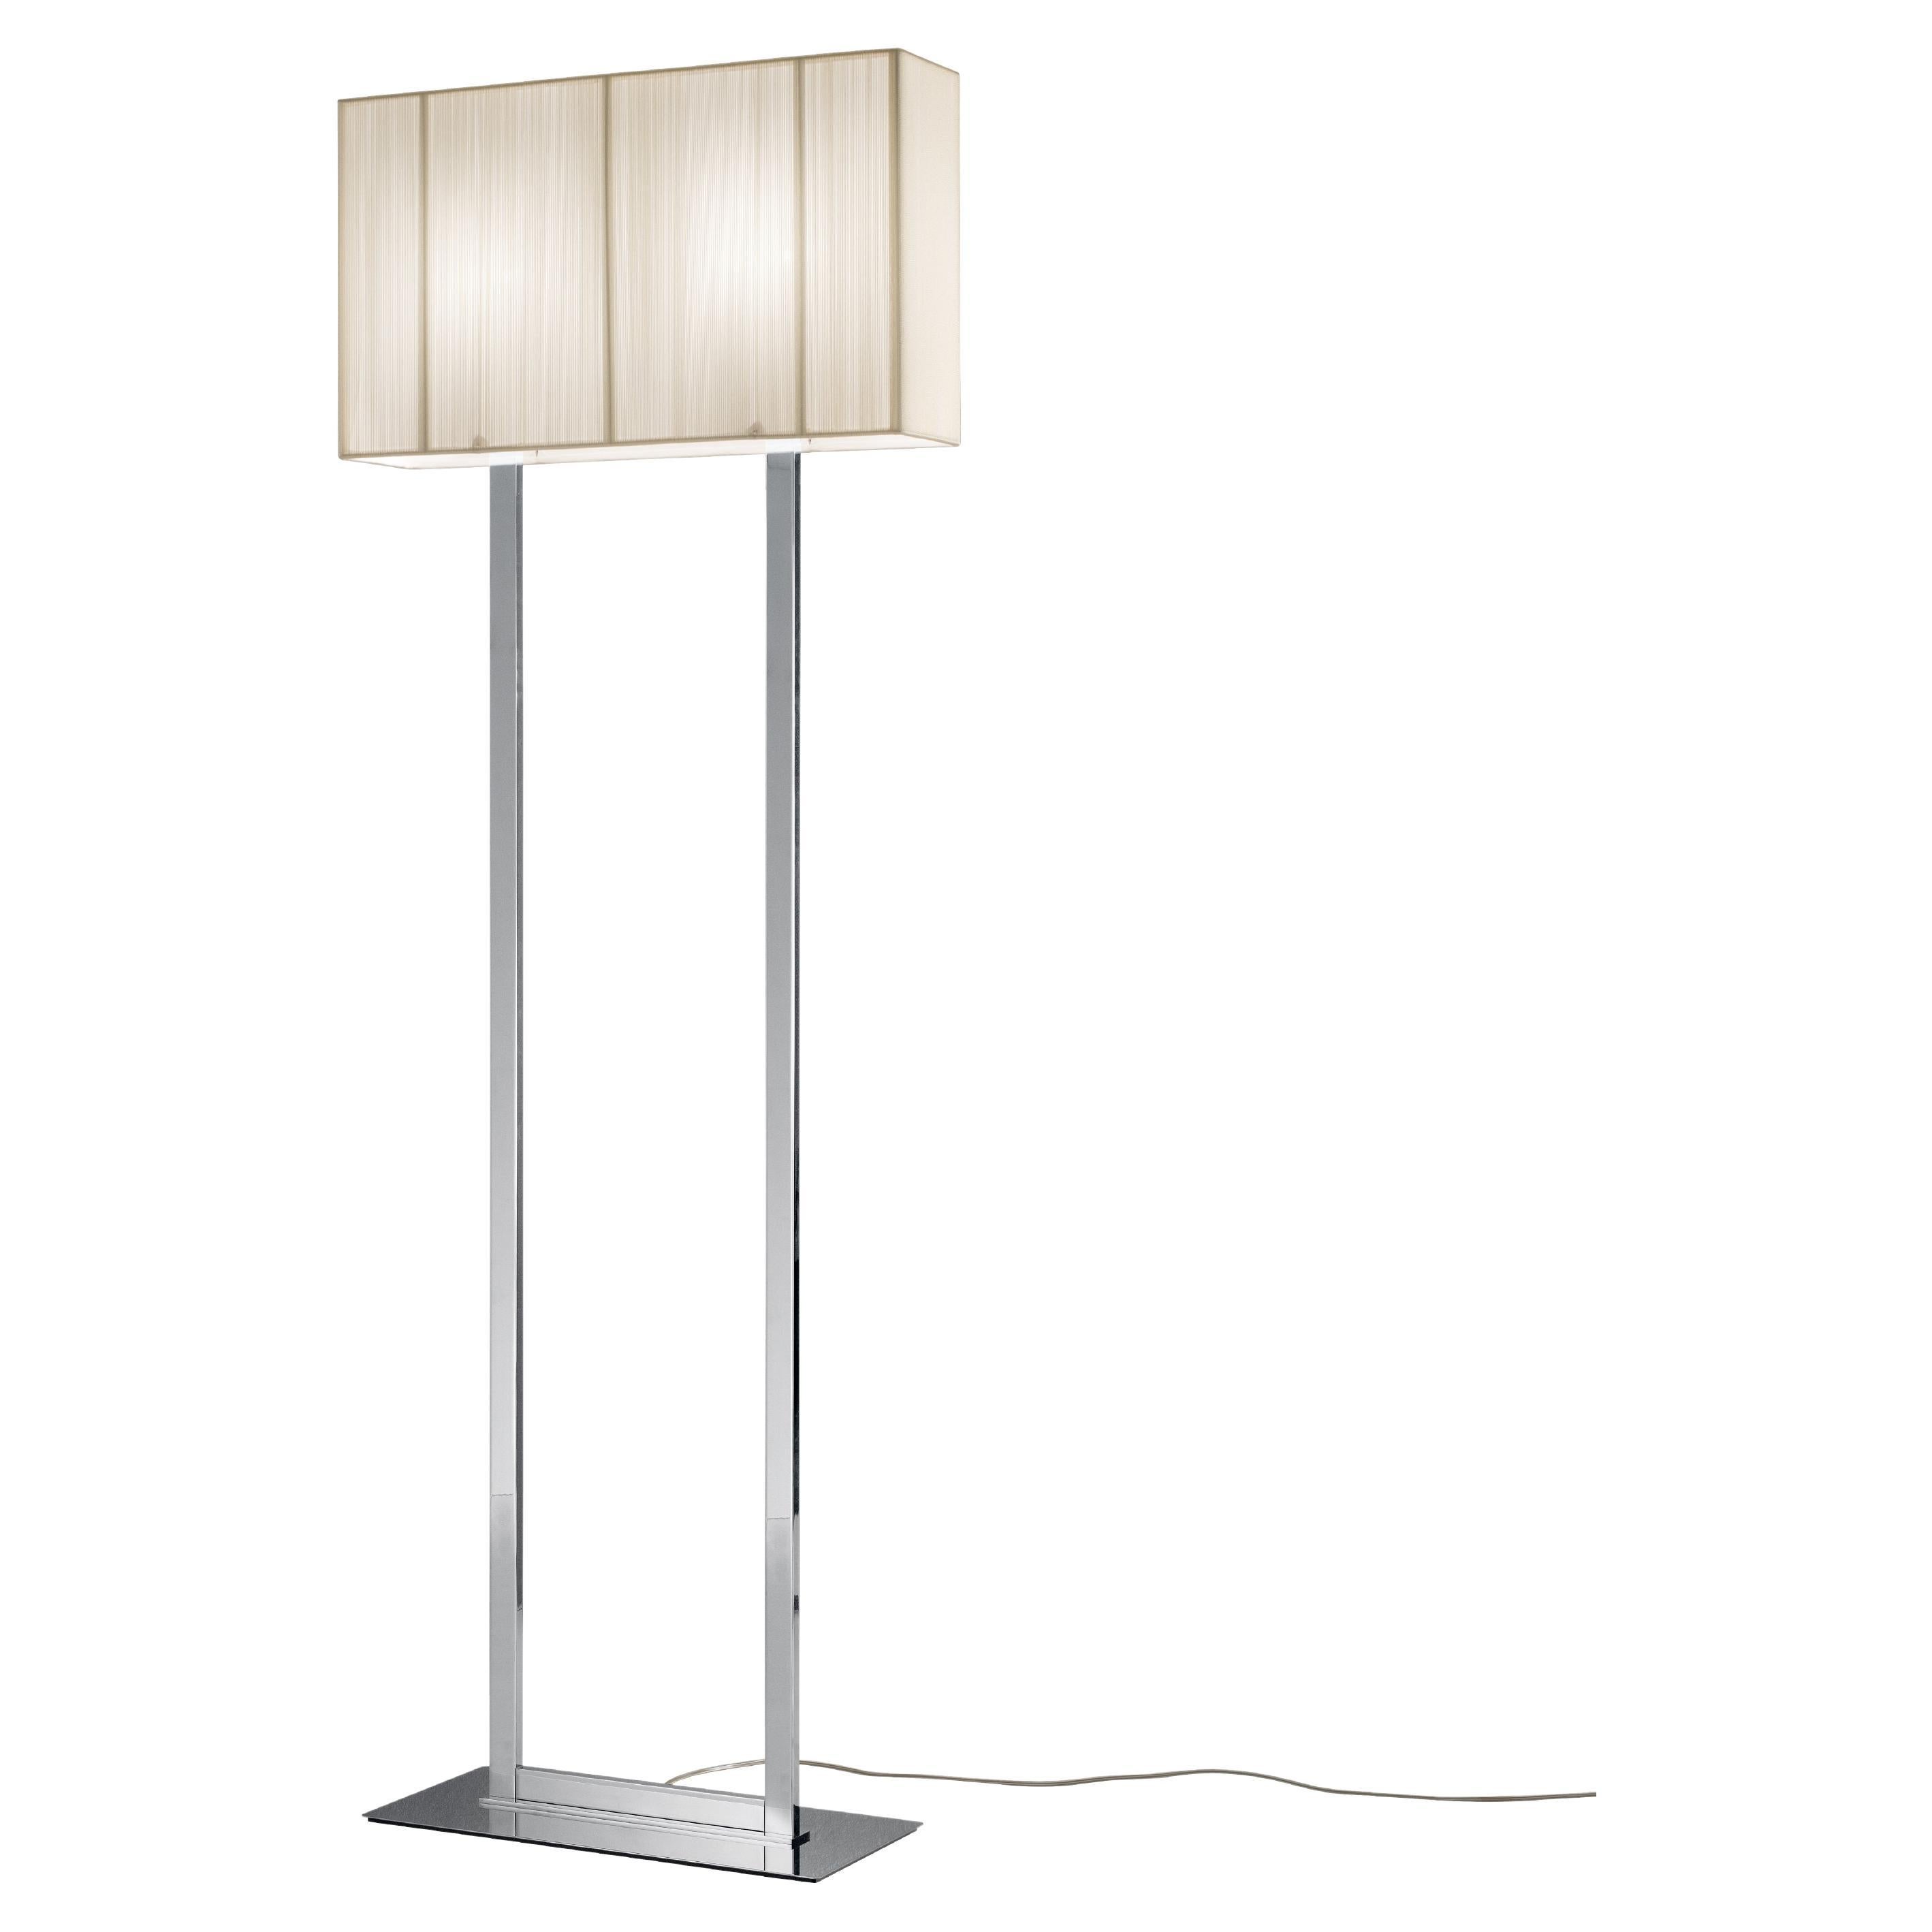 Axolight Clavius Medium Floor Lamp in White Lampshade and Chrome Finish For Sale